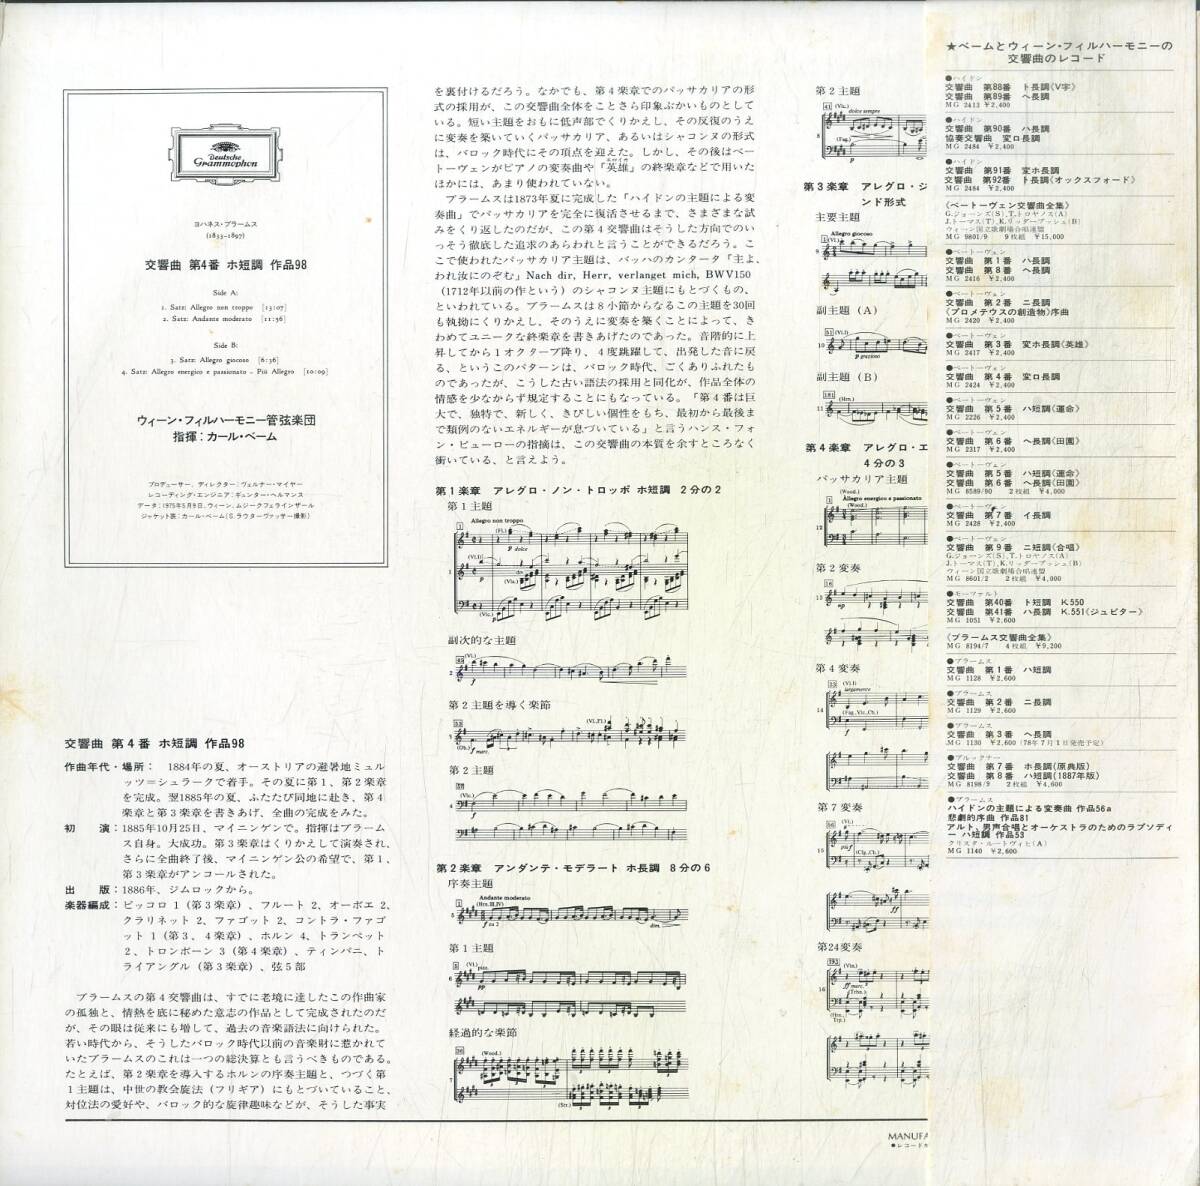 A00577178/LP/カール・ベーム「ブラームス/交響曲第4番」の画像2